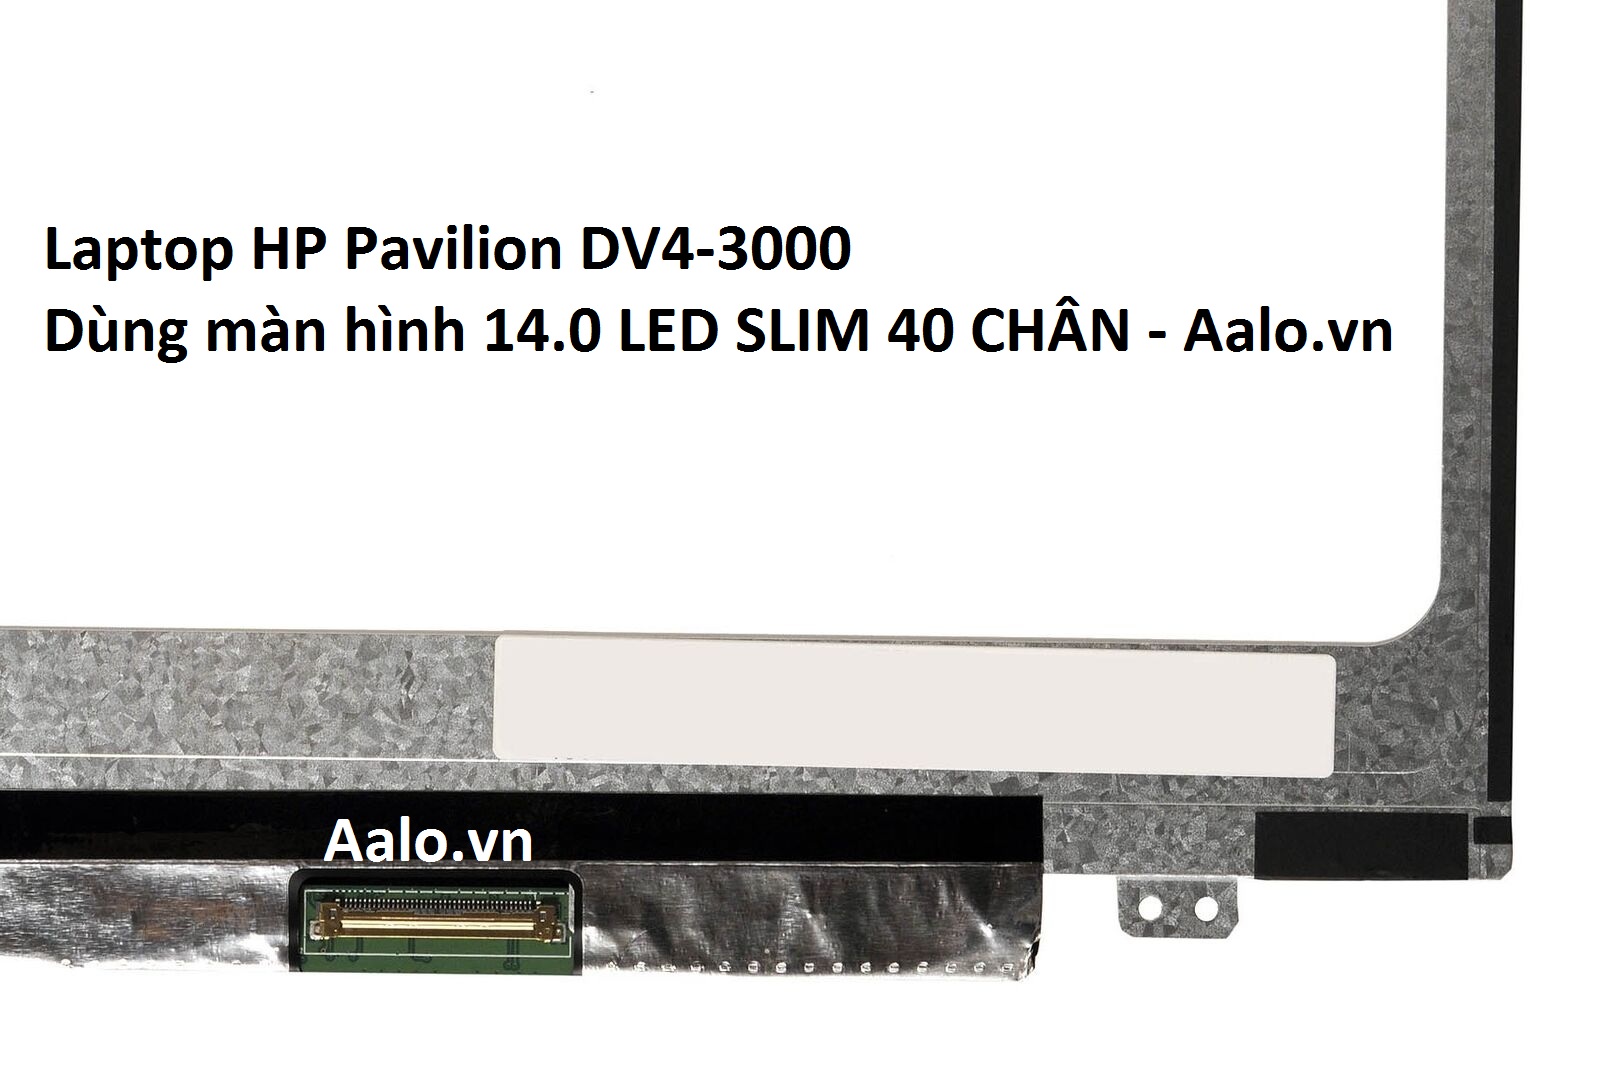 Màn hình Laptop HP Pavilion DV4-3000 - Aalo.vn